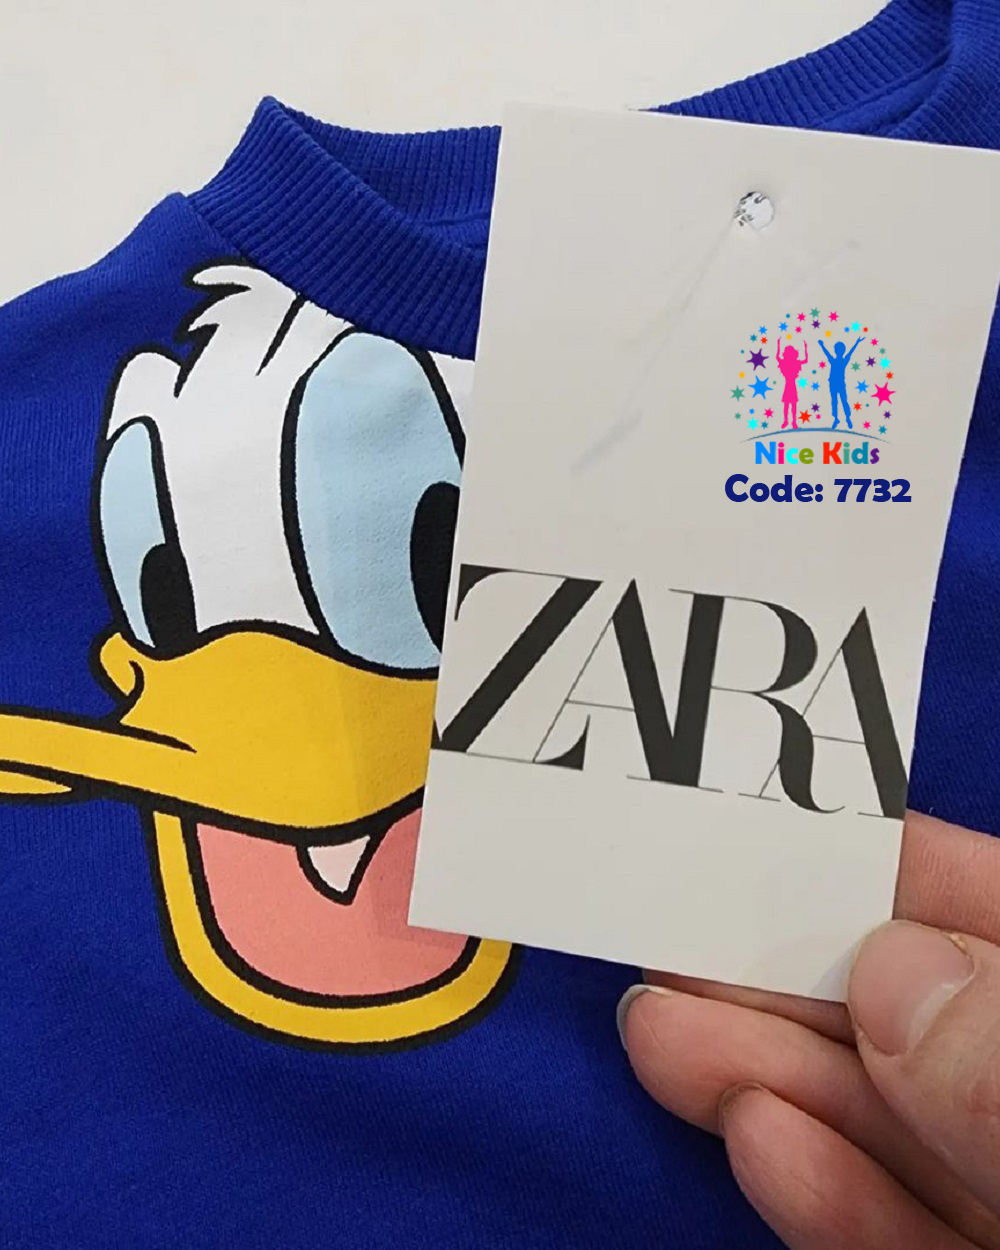 تصویر شماره 5 مربوط به ست بلوز و شلوار Zara ۰🇹🇷🇹🇷🇹🇷 با کد 7732